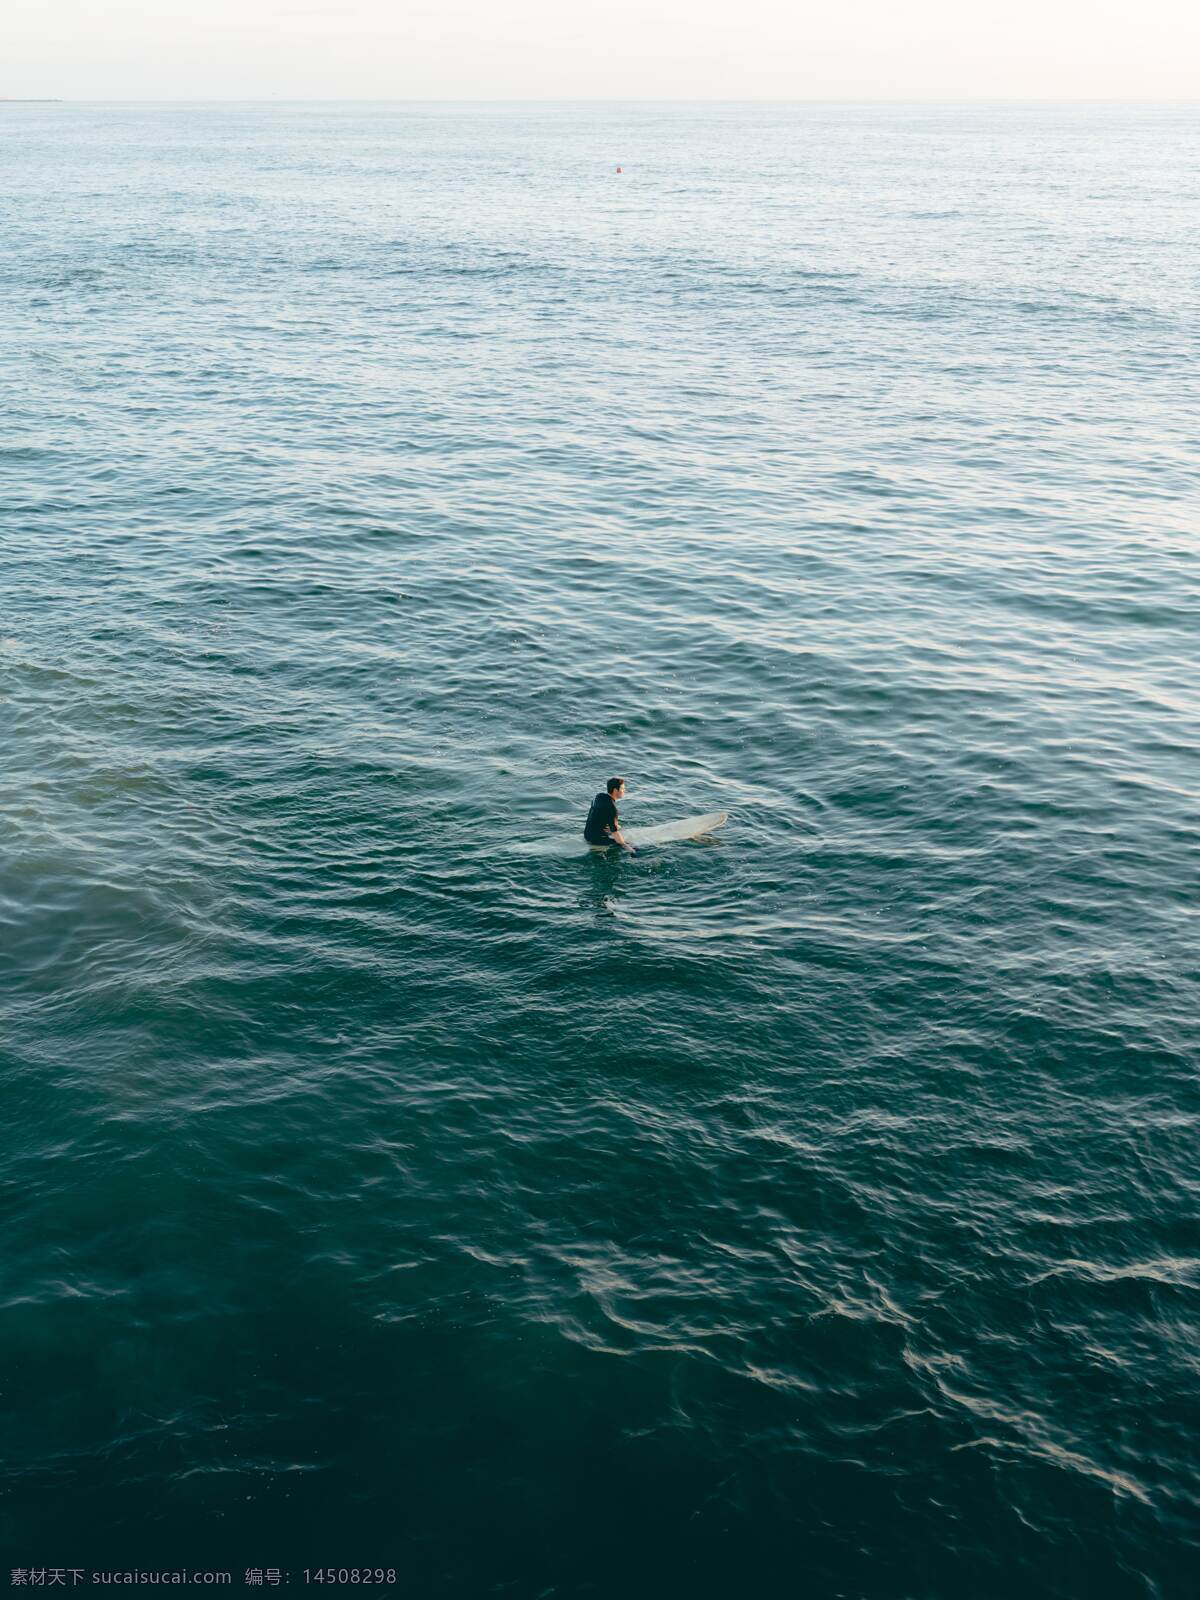 海洋冲浪 海洋 孤独 深蓝 冲浪 一个人 风景 人物图库 人物摄影